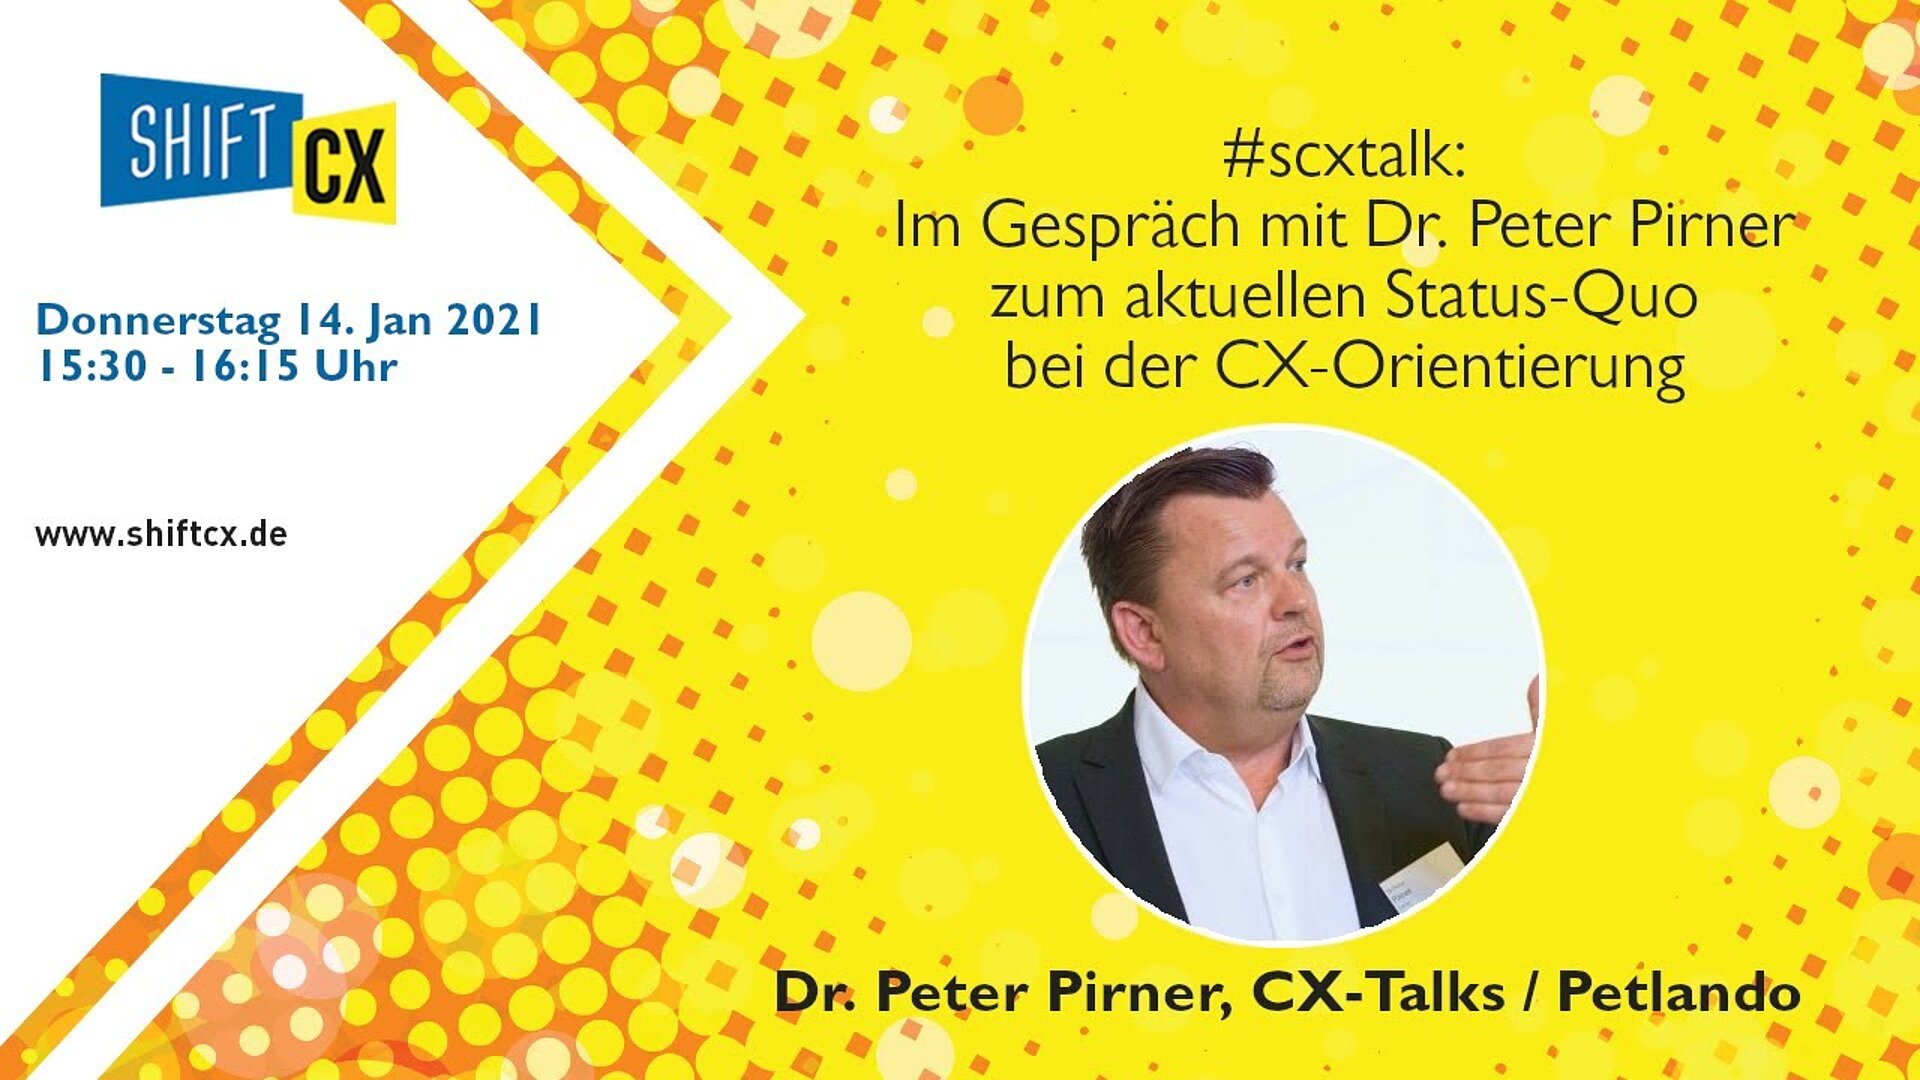 Im Gespräch mit Dr. Peter Pirner zu aktuellem Status-Quo bei der CX-Orientierung